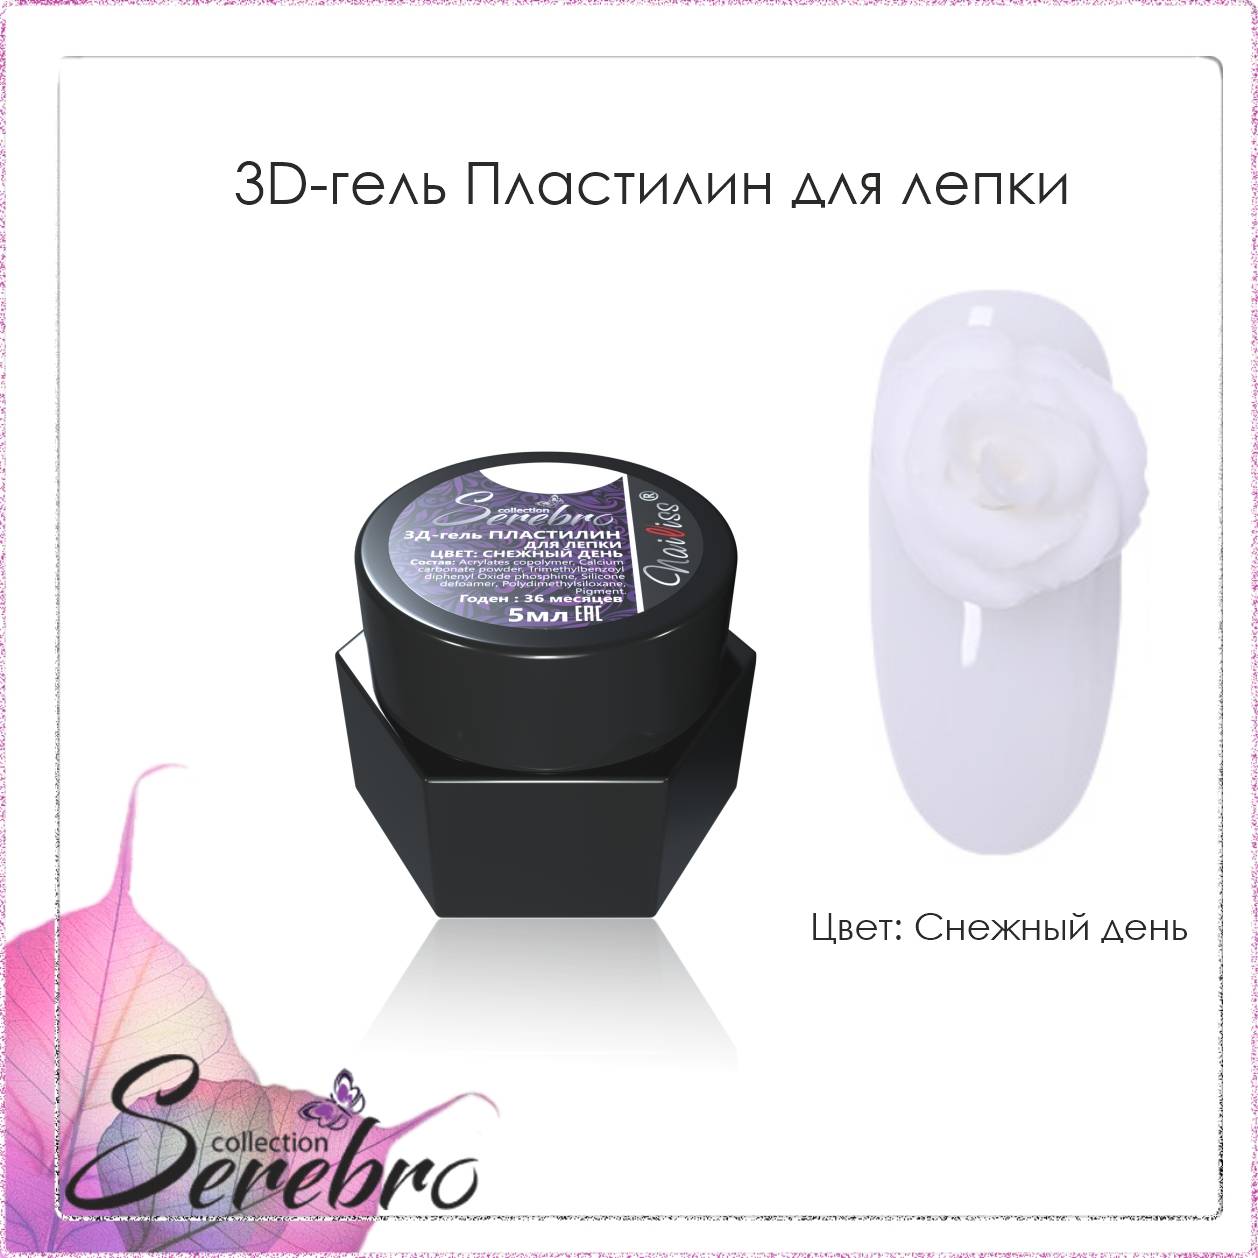 Serebro, 3D-гель Пластилин для лепки, цвет загадка, 5 мл